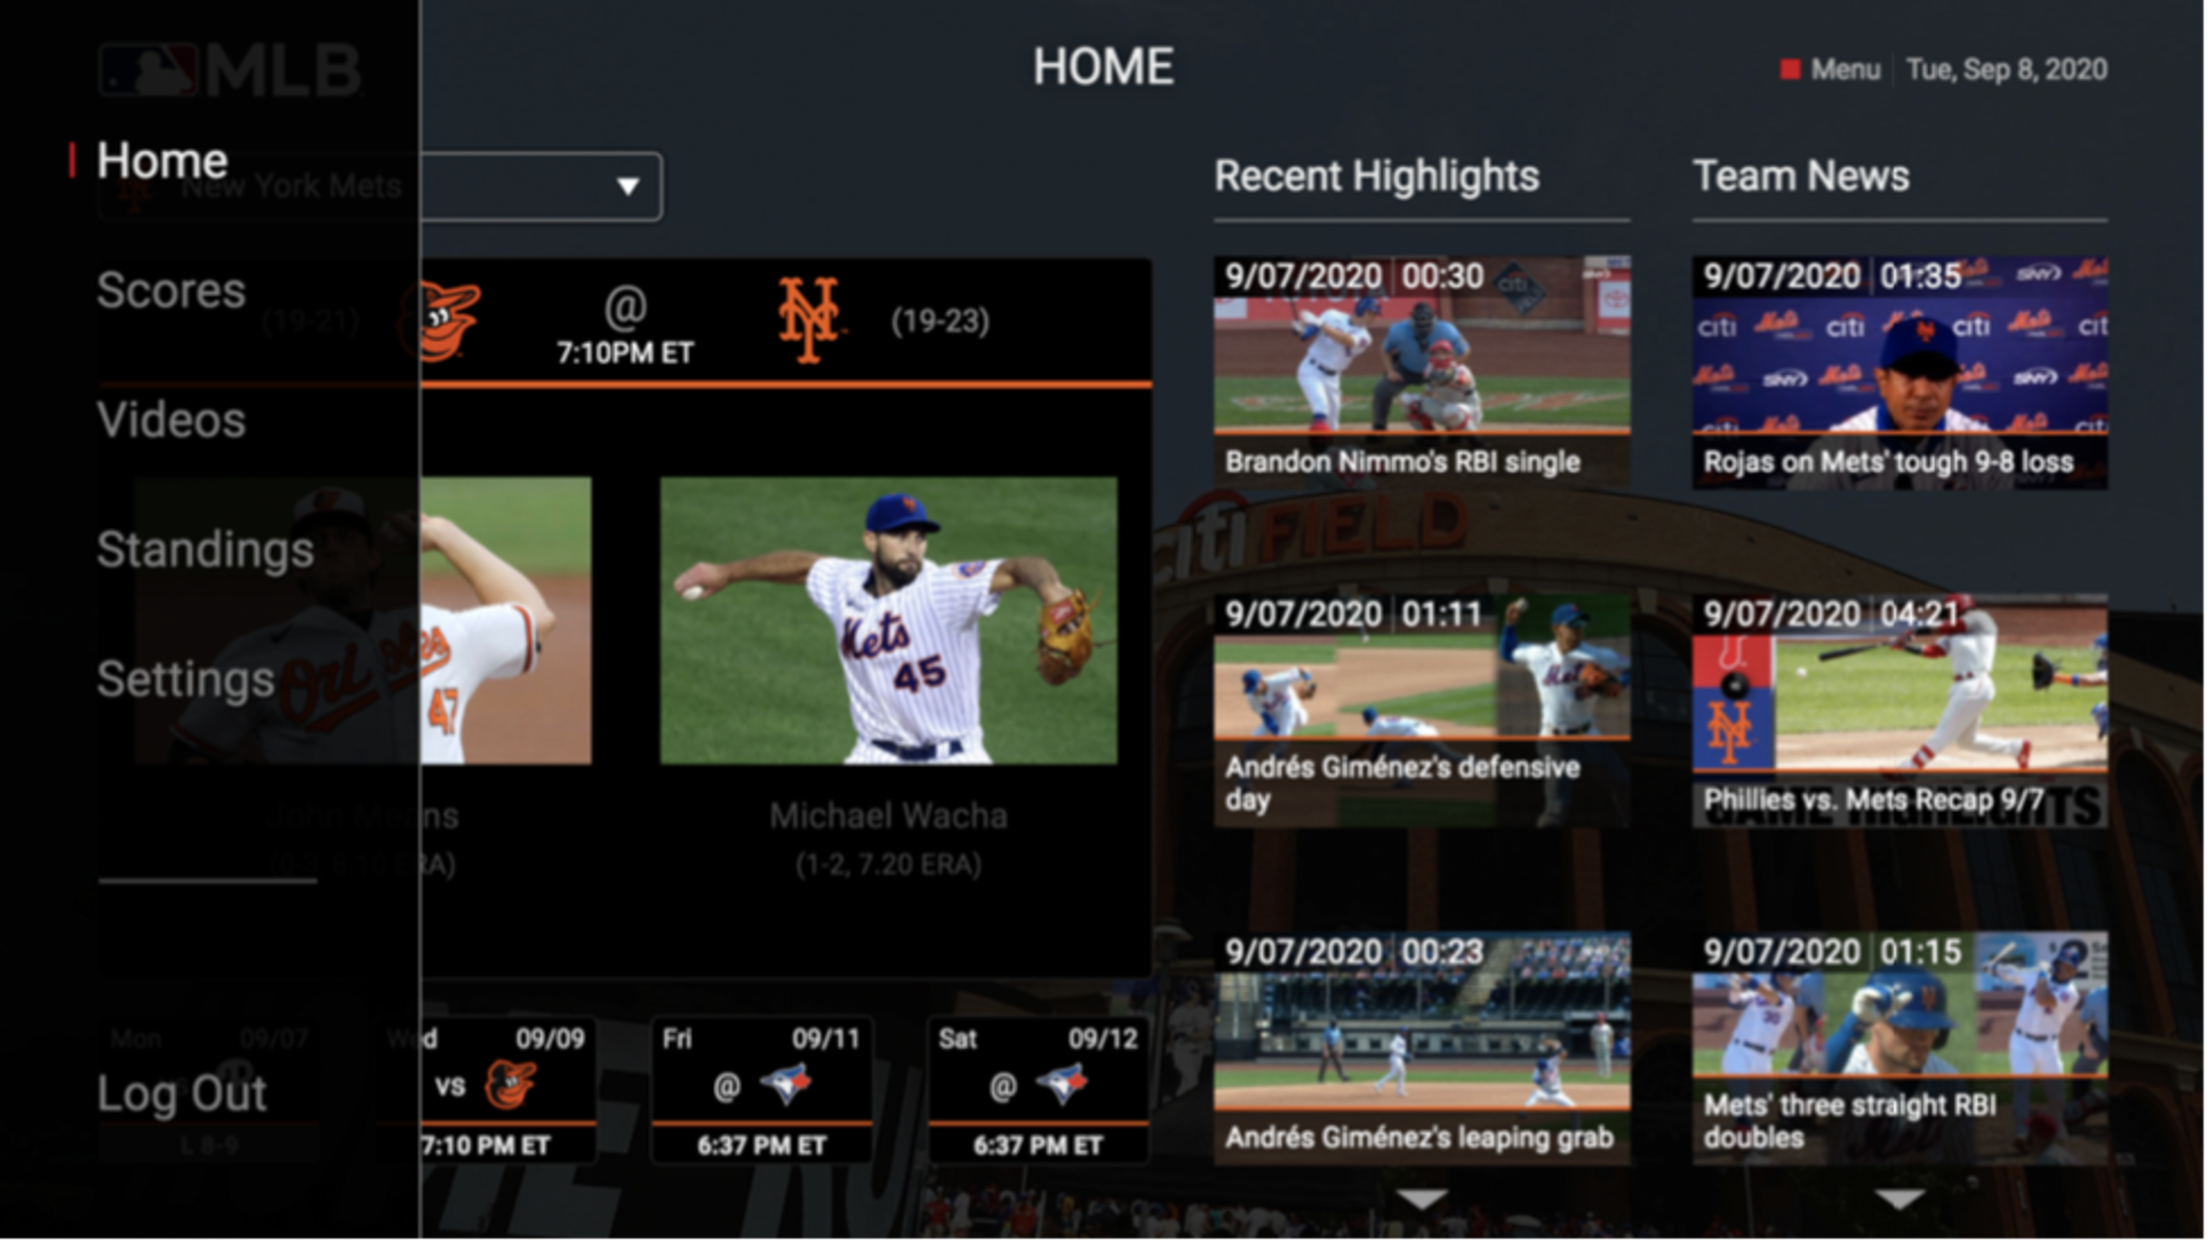 MLB.TV Samsung Viewing/Navigation